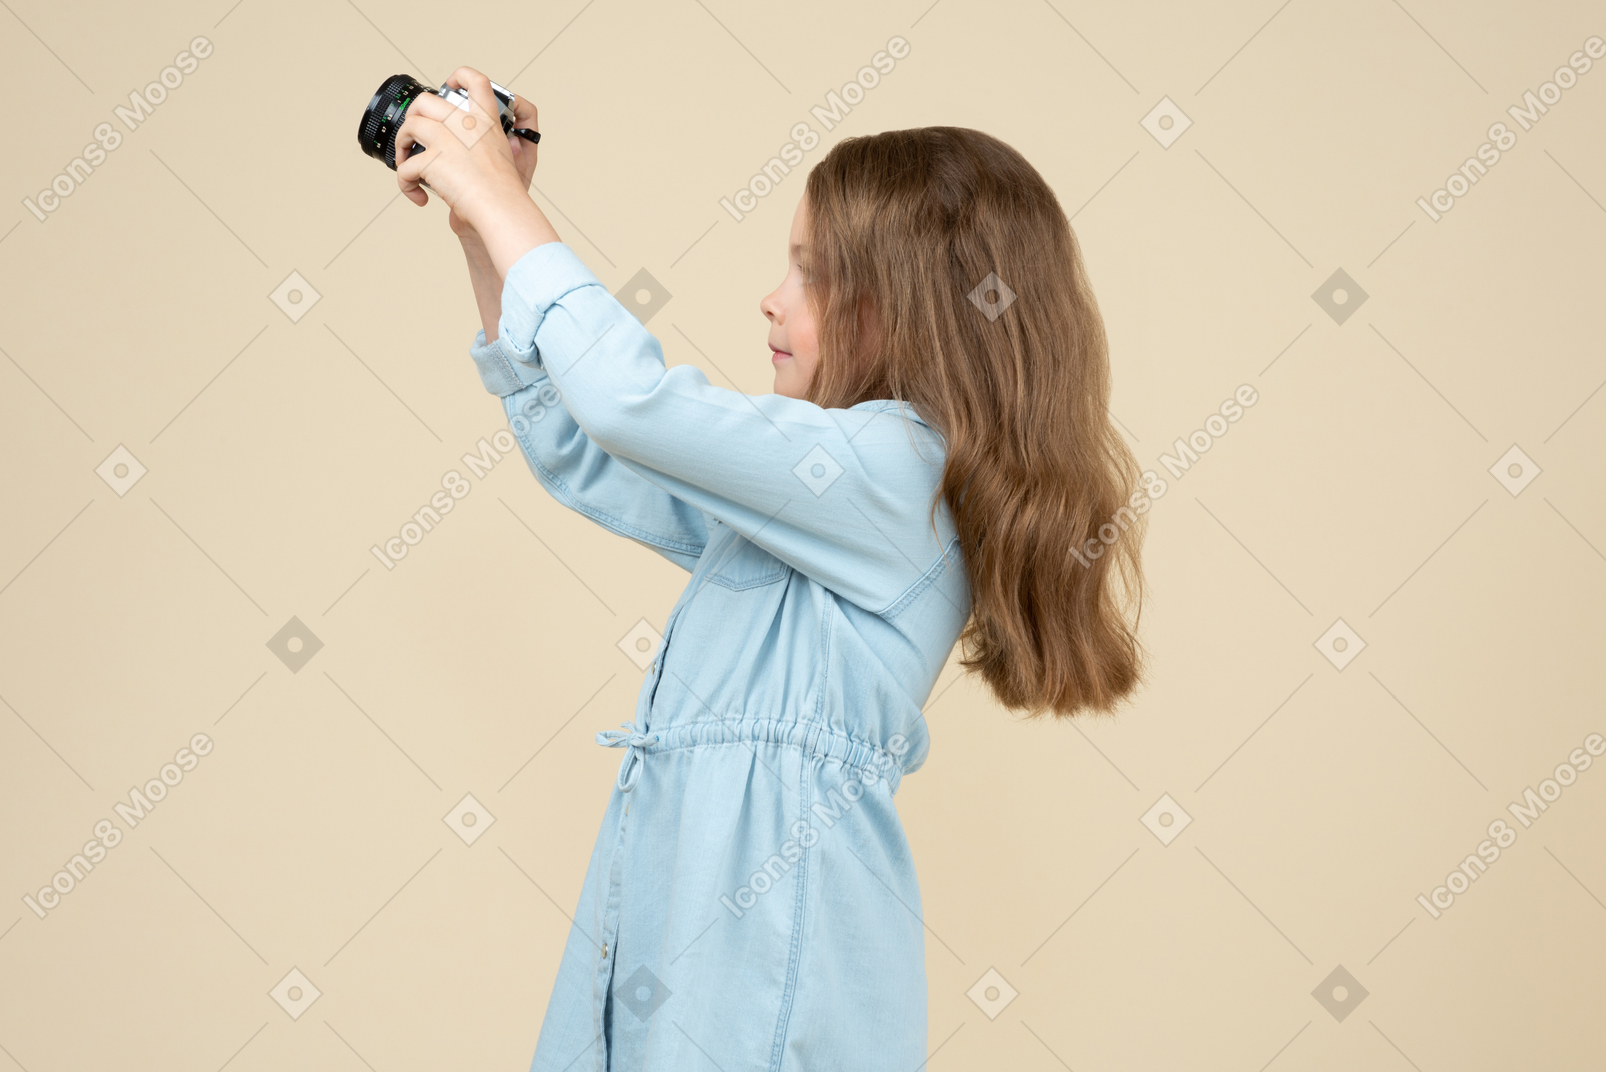 Bambina carina che tiene una macchina fotografica